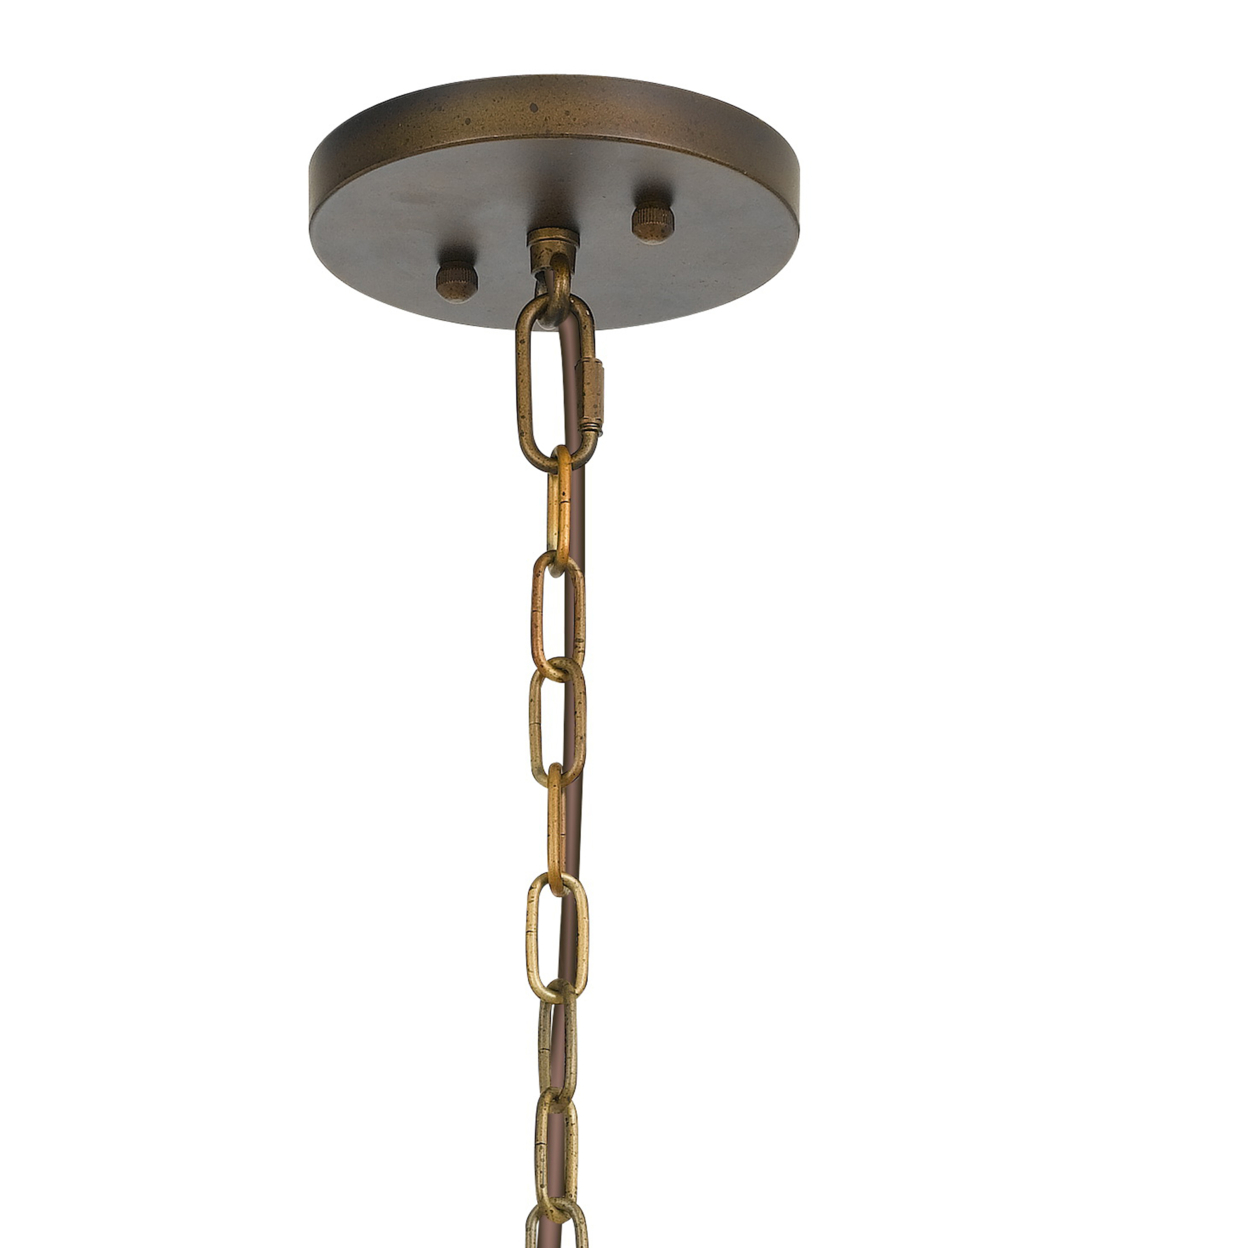 60 X 3 Watt Round Metal Frame Chandelier With 6 Foot Chain, Distressed Gold- Saltoro Sherpi